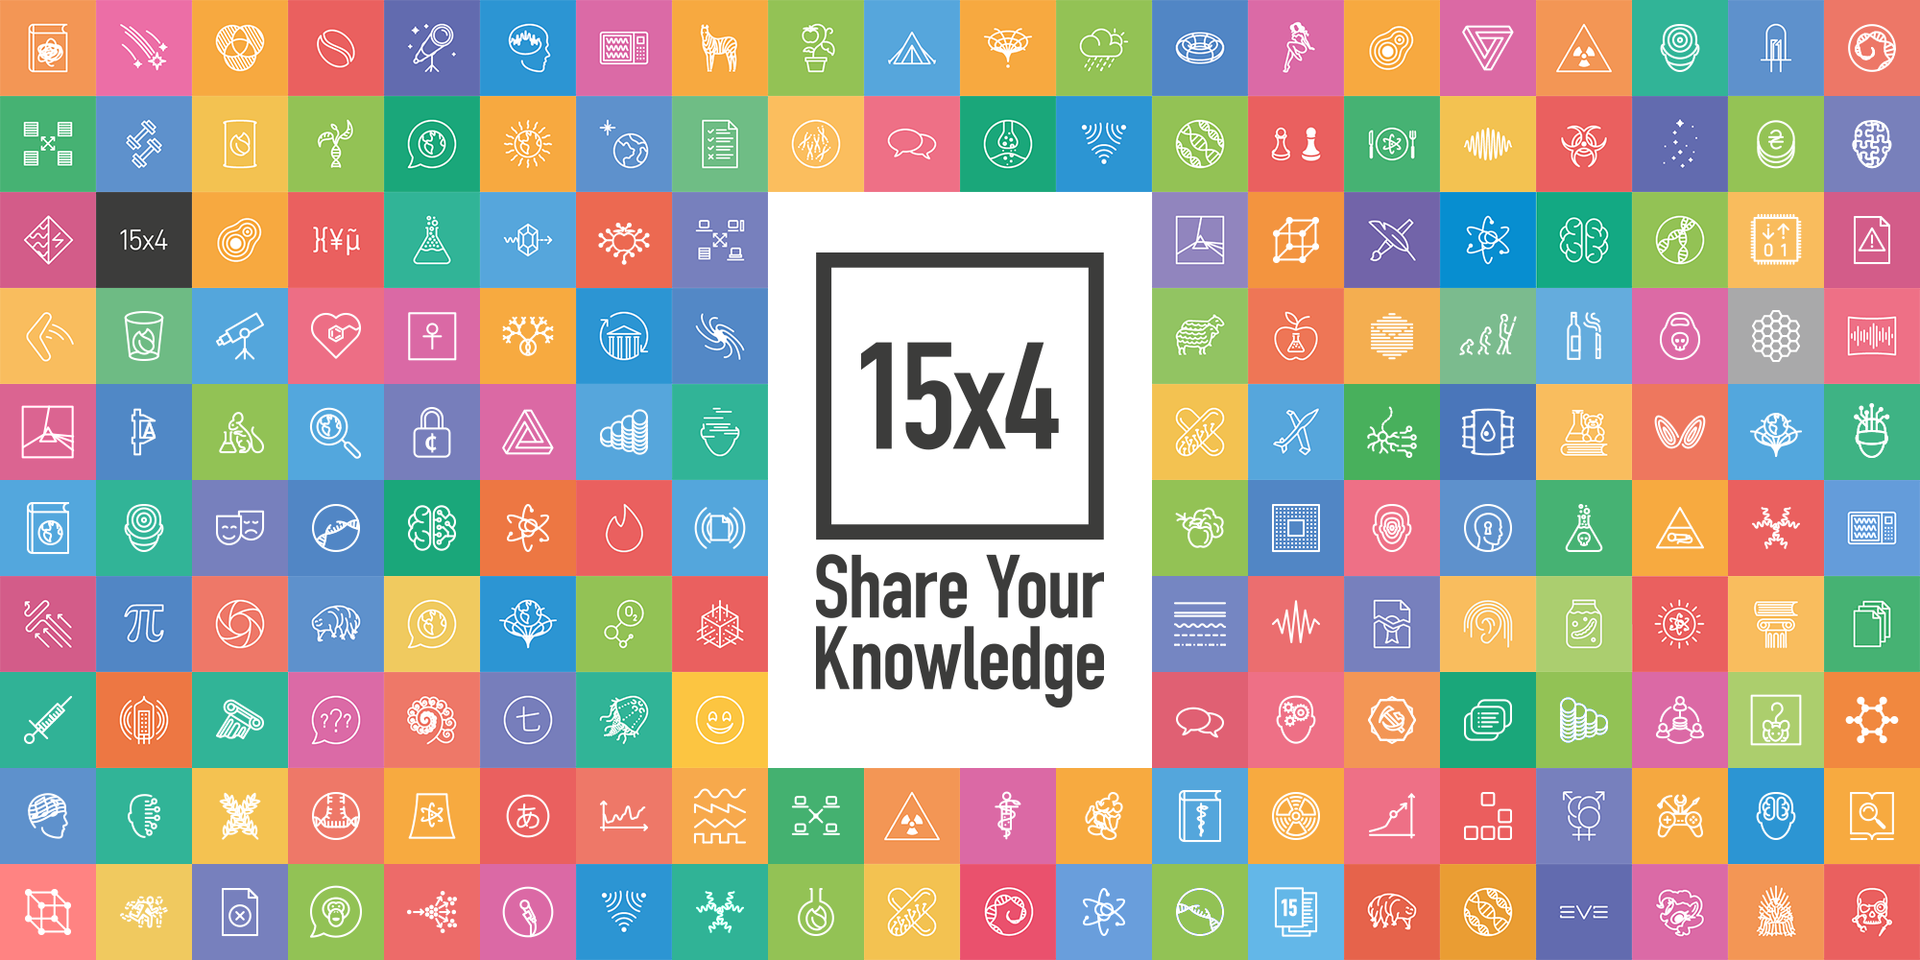 На картинке 176 разноцветных квадратиков с пиктограммами лекций. Посередине 15x4 Share Your Knowledge.